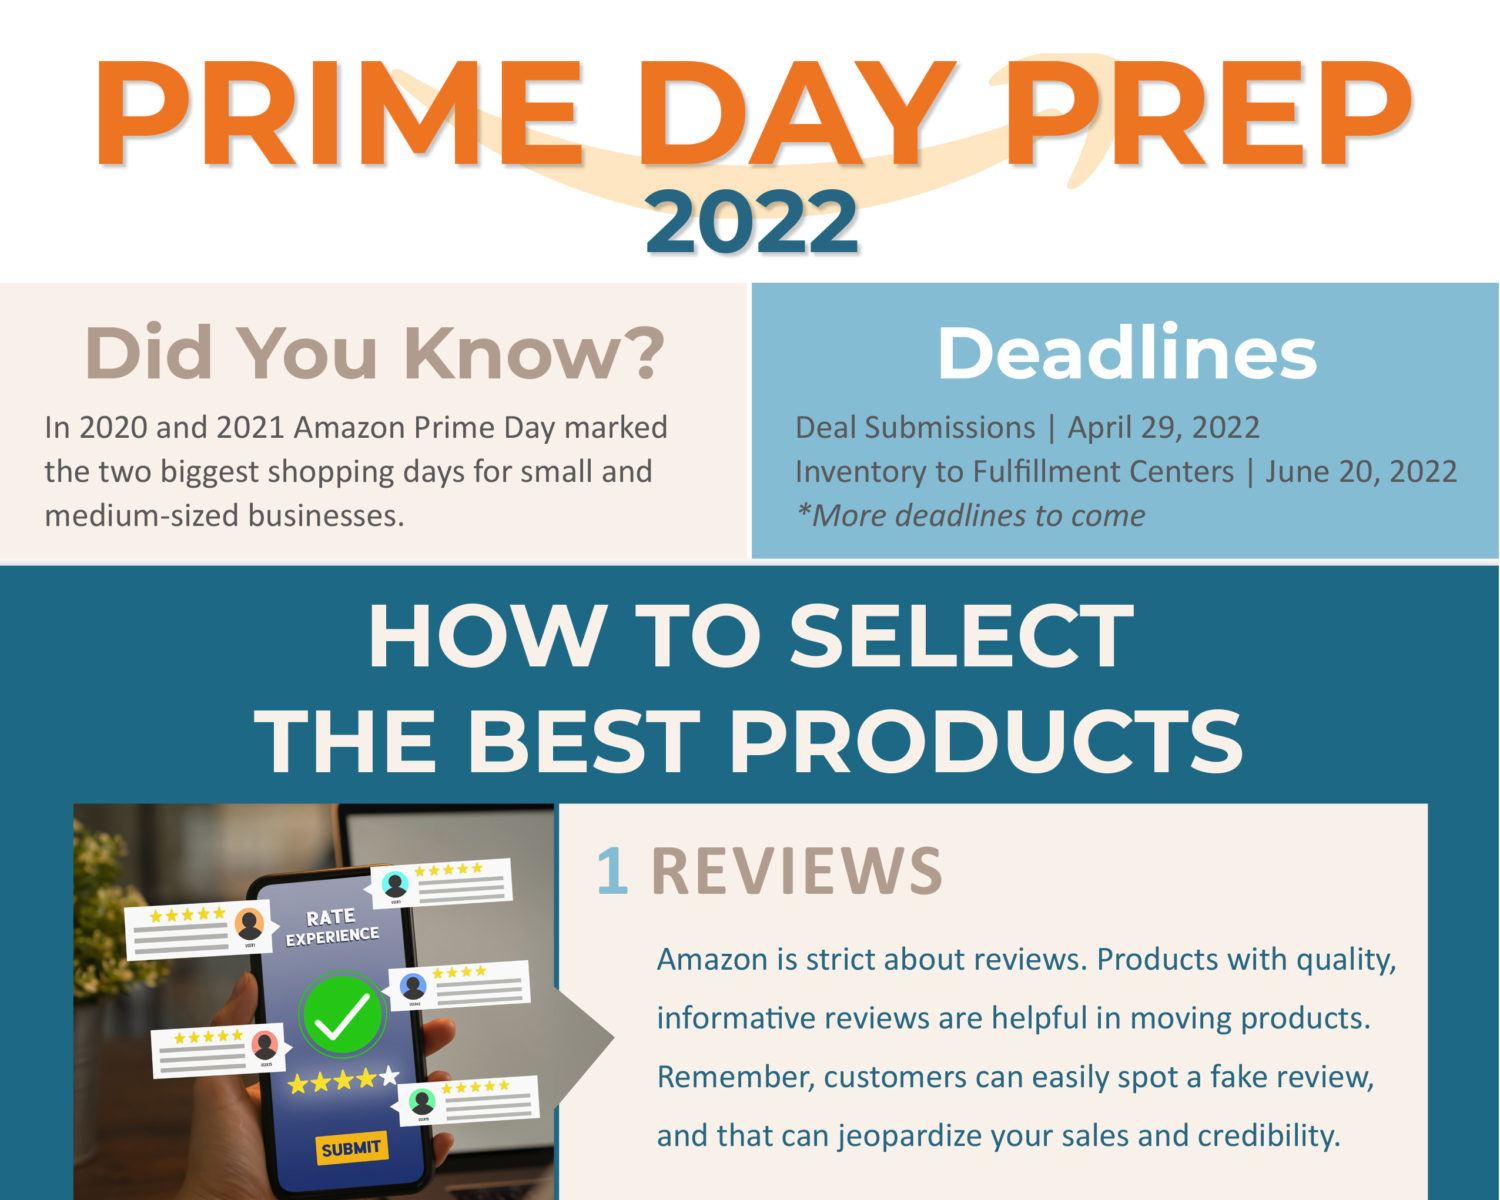 Prime Day Prep 2022